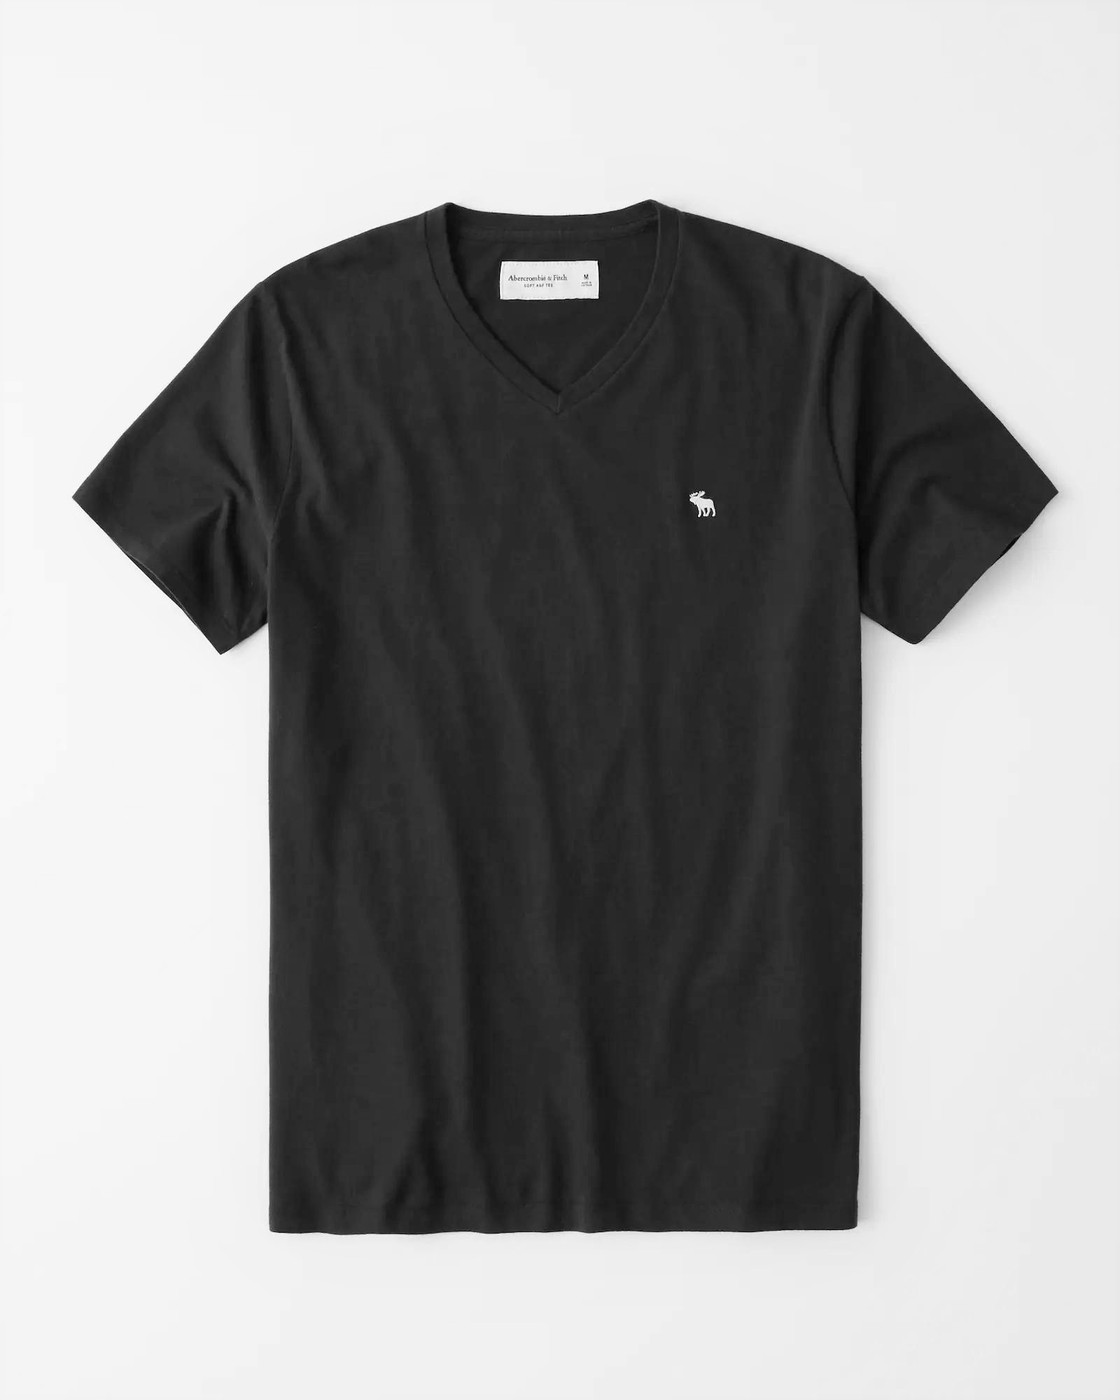 Черная футболка - мужская футболка Abercrombie & Fitch, XS, XS